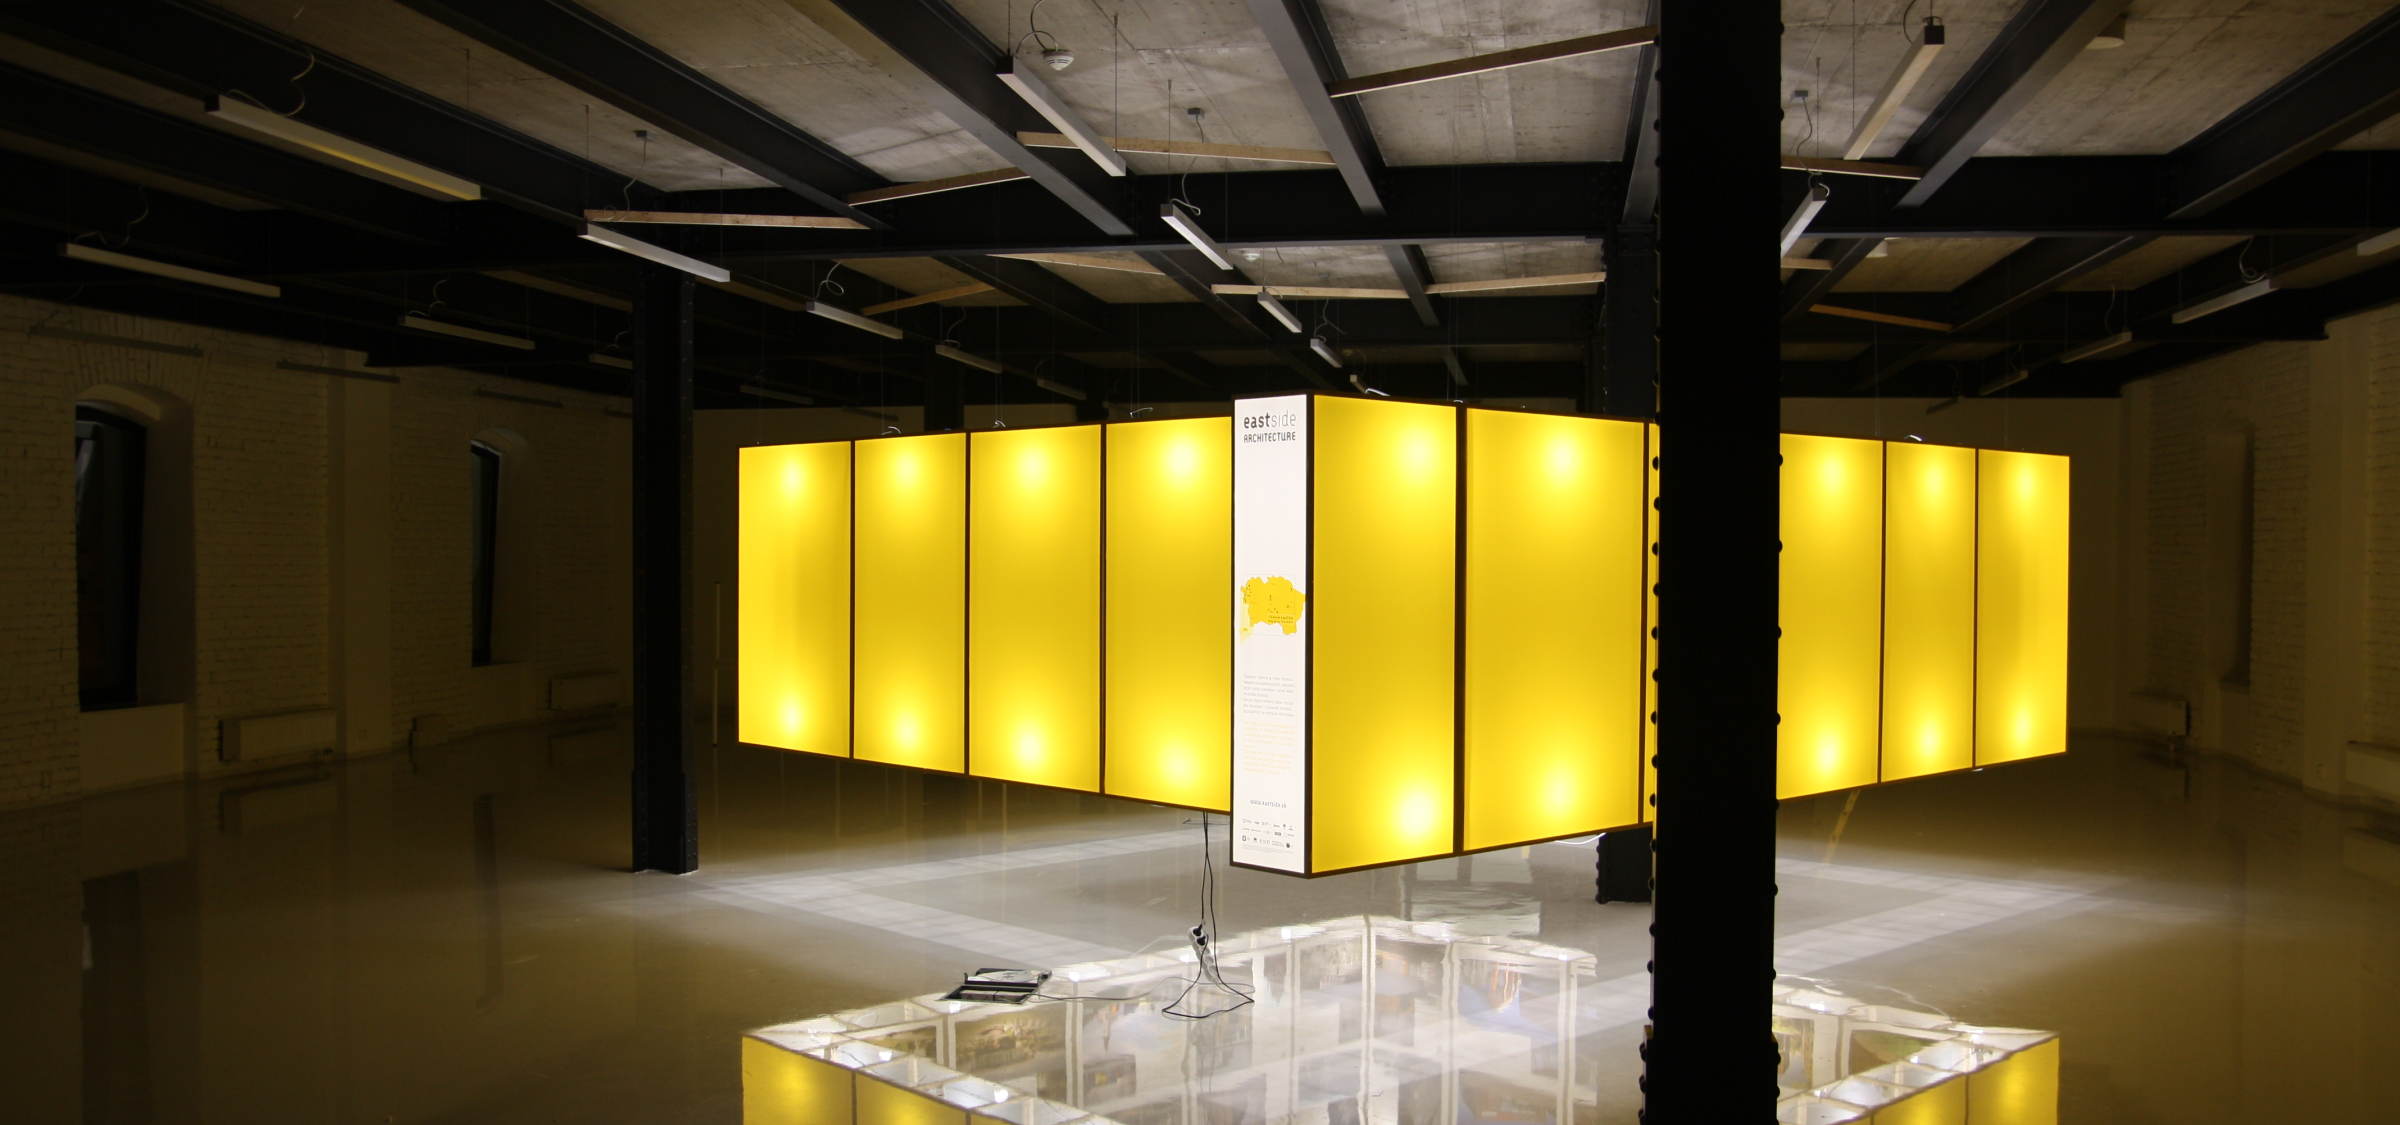 Otvorenie výstavy v košickom Kulturparku | Aktuálne | Atrium Architekti